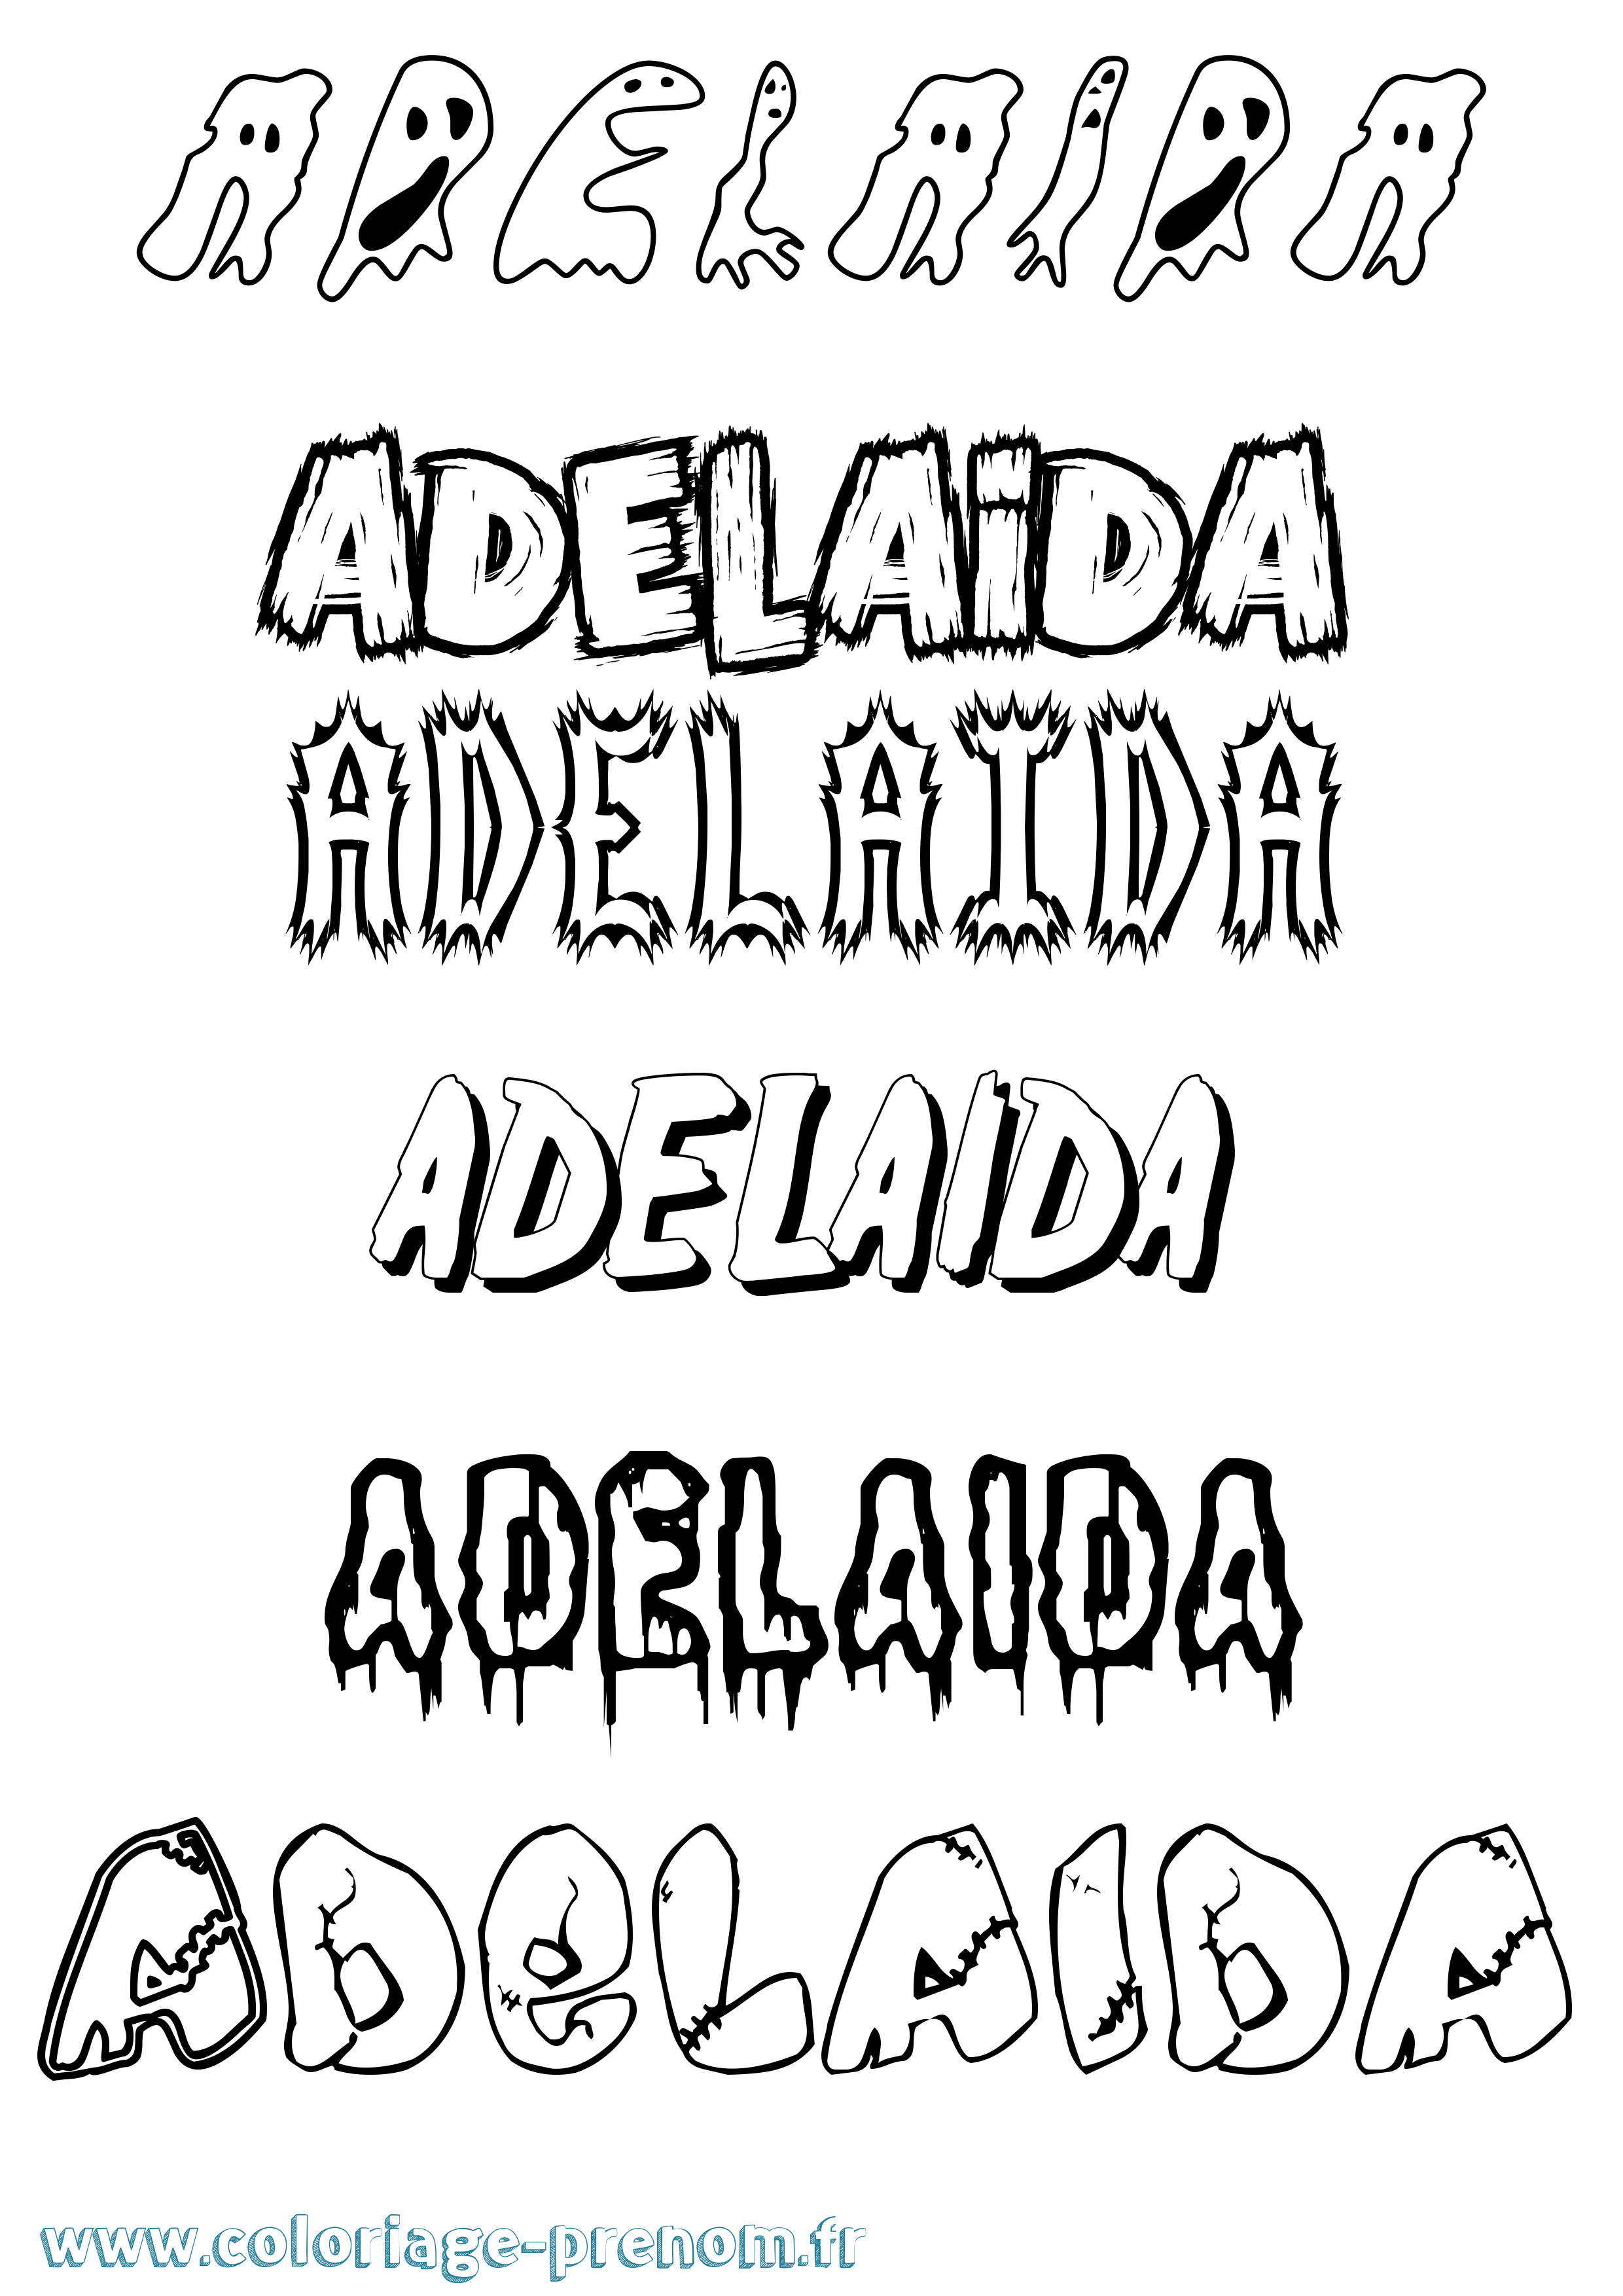 Coloriage prénom Adelaida Frisson